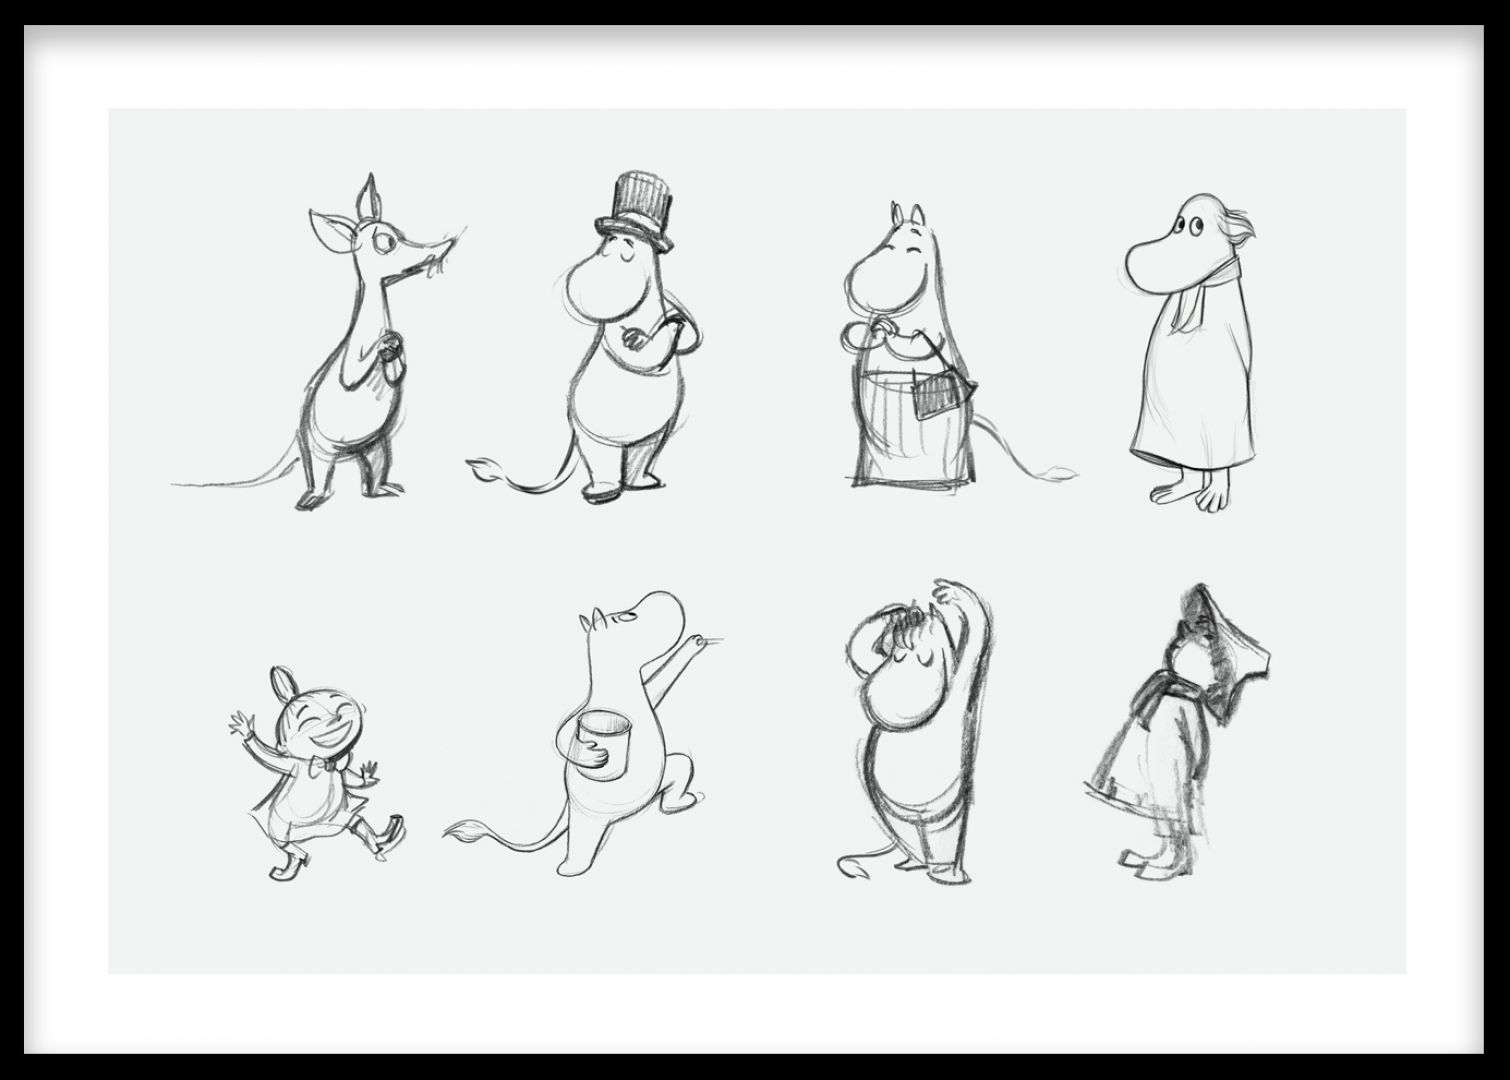 Moomin characters фигурки